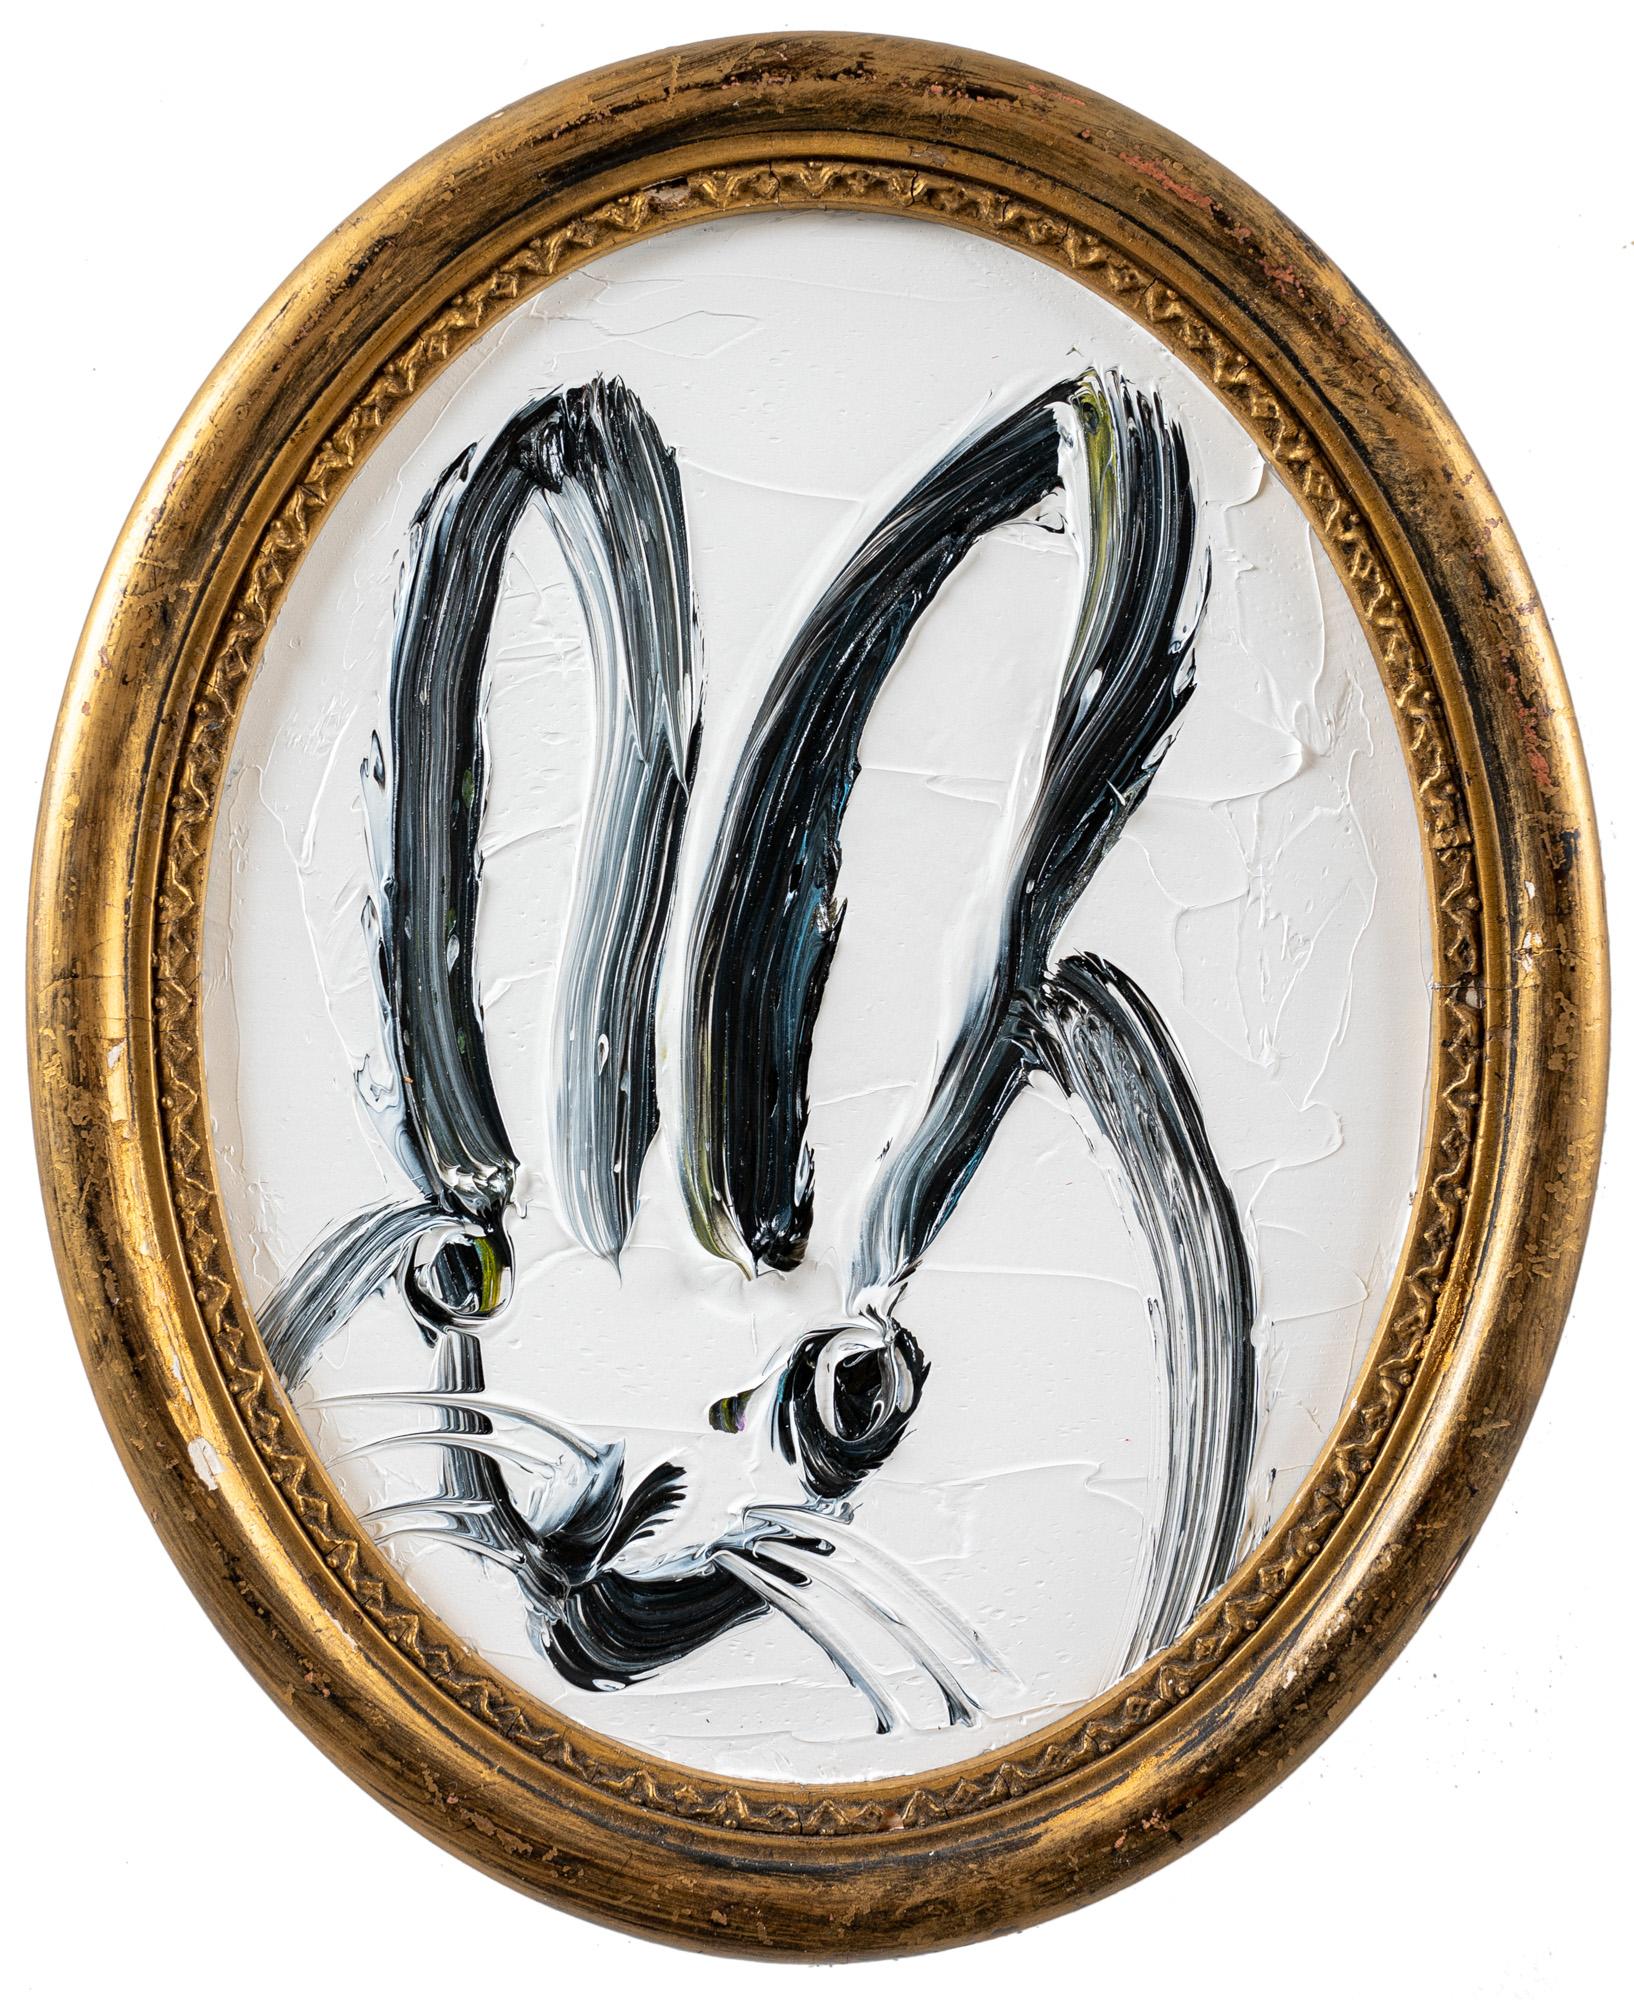 "Max" ist ein gerahmtes Ölgemälde auf Holz von Hunt Slonem, das ein einsames Kaninchen in malerischen Konturlinien vor einem einfachen weißen Hintergrund zeigt. 

Dieses Werk ist in einem antiken Rahmen gefasst, der vom Künstler für dieses Gemälde